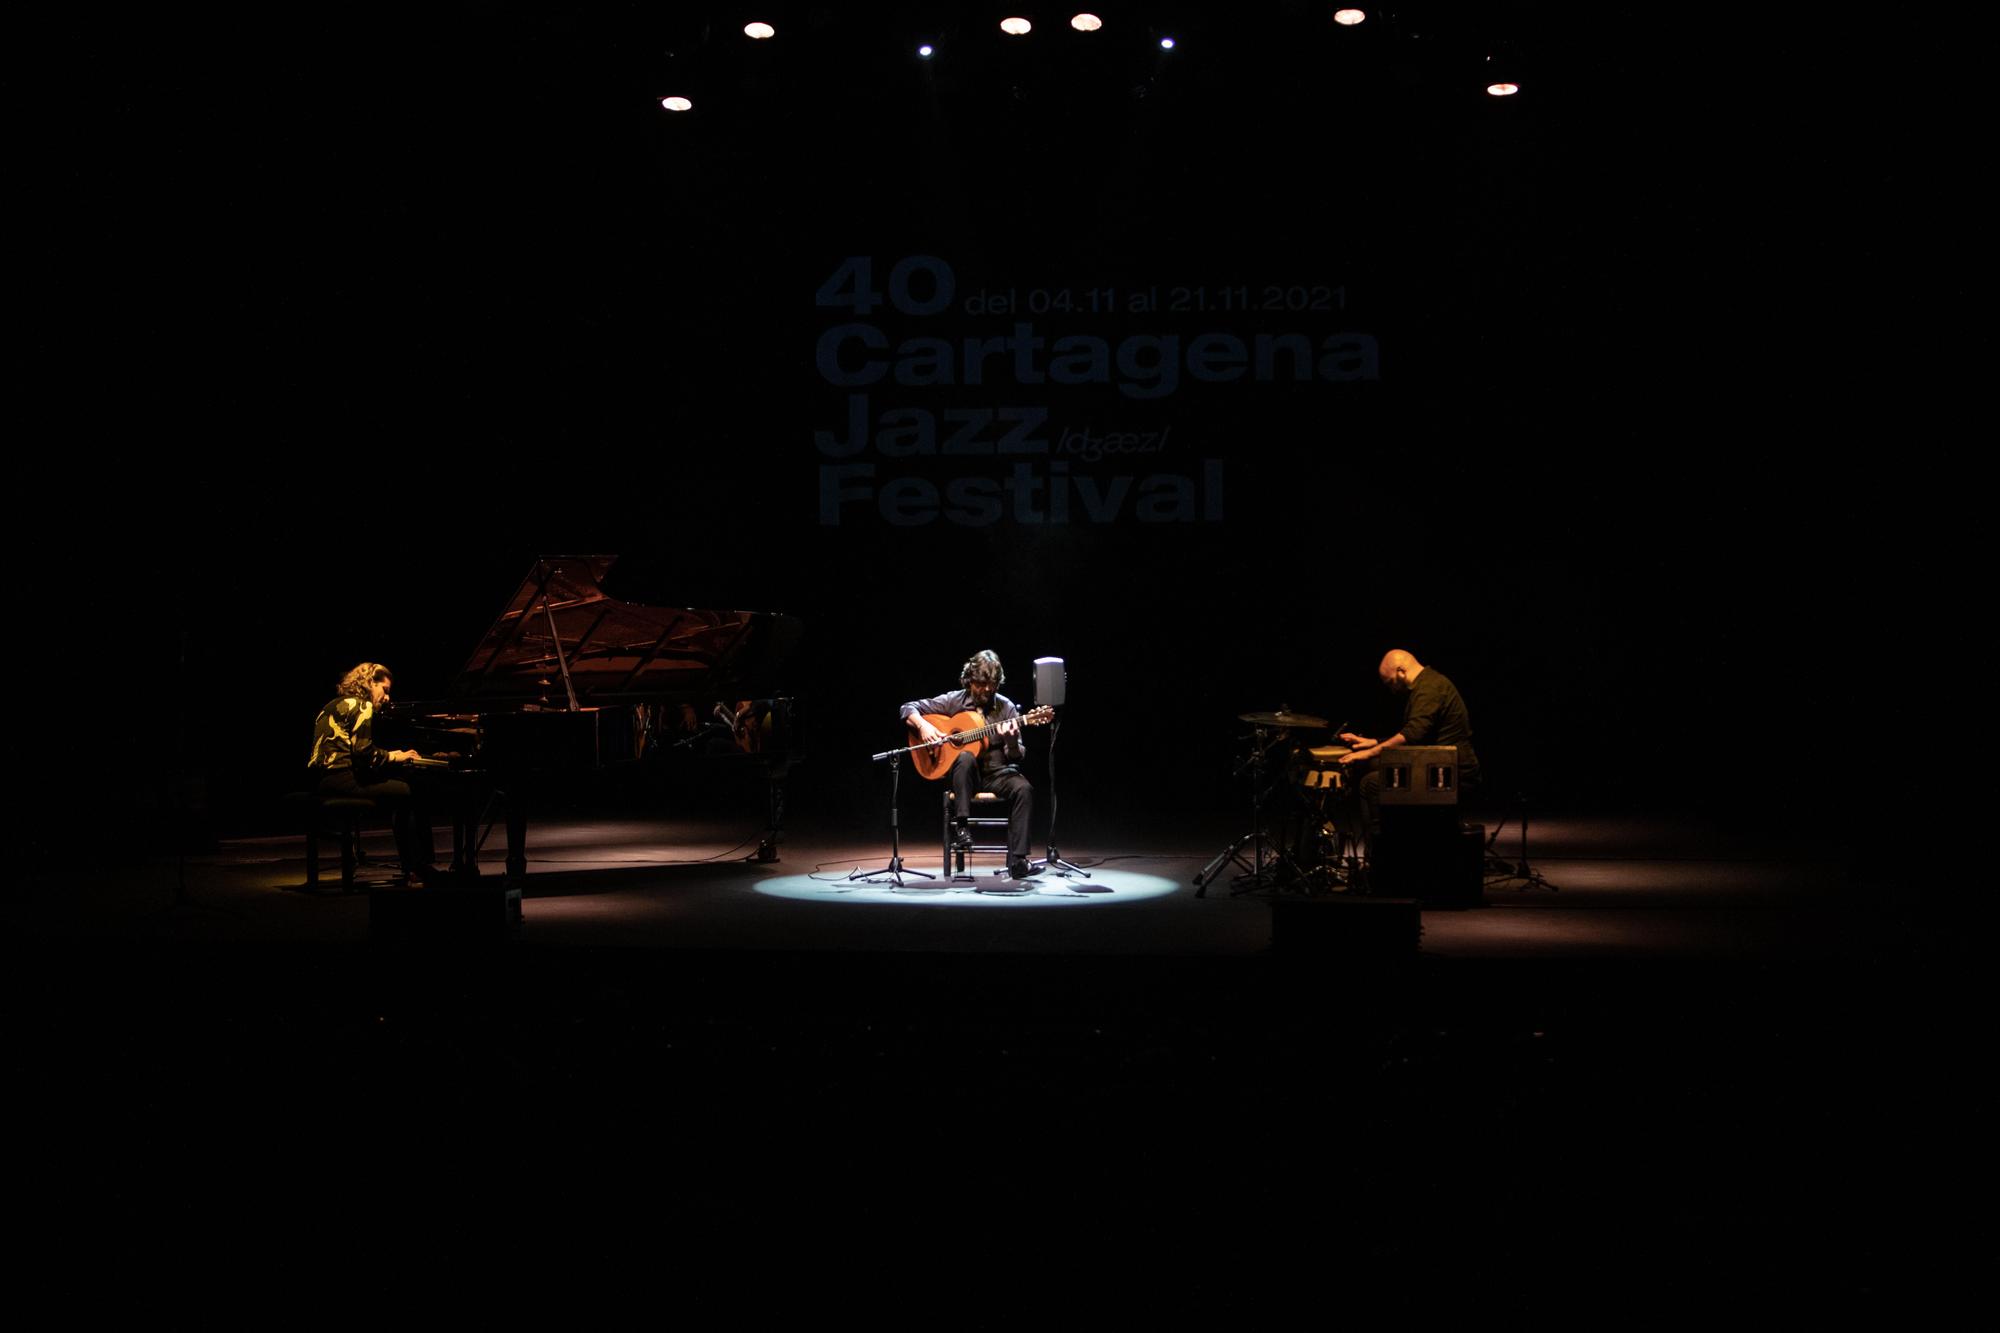 Chicuelo- Marco Mezquida en el Cartagena Jazz Festival